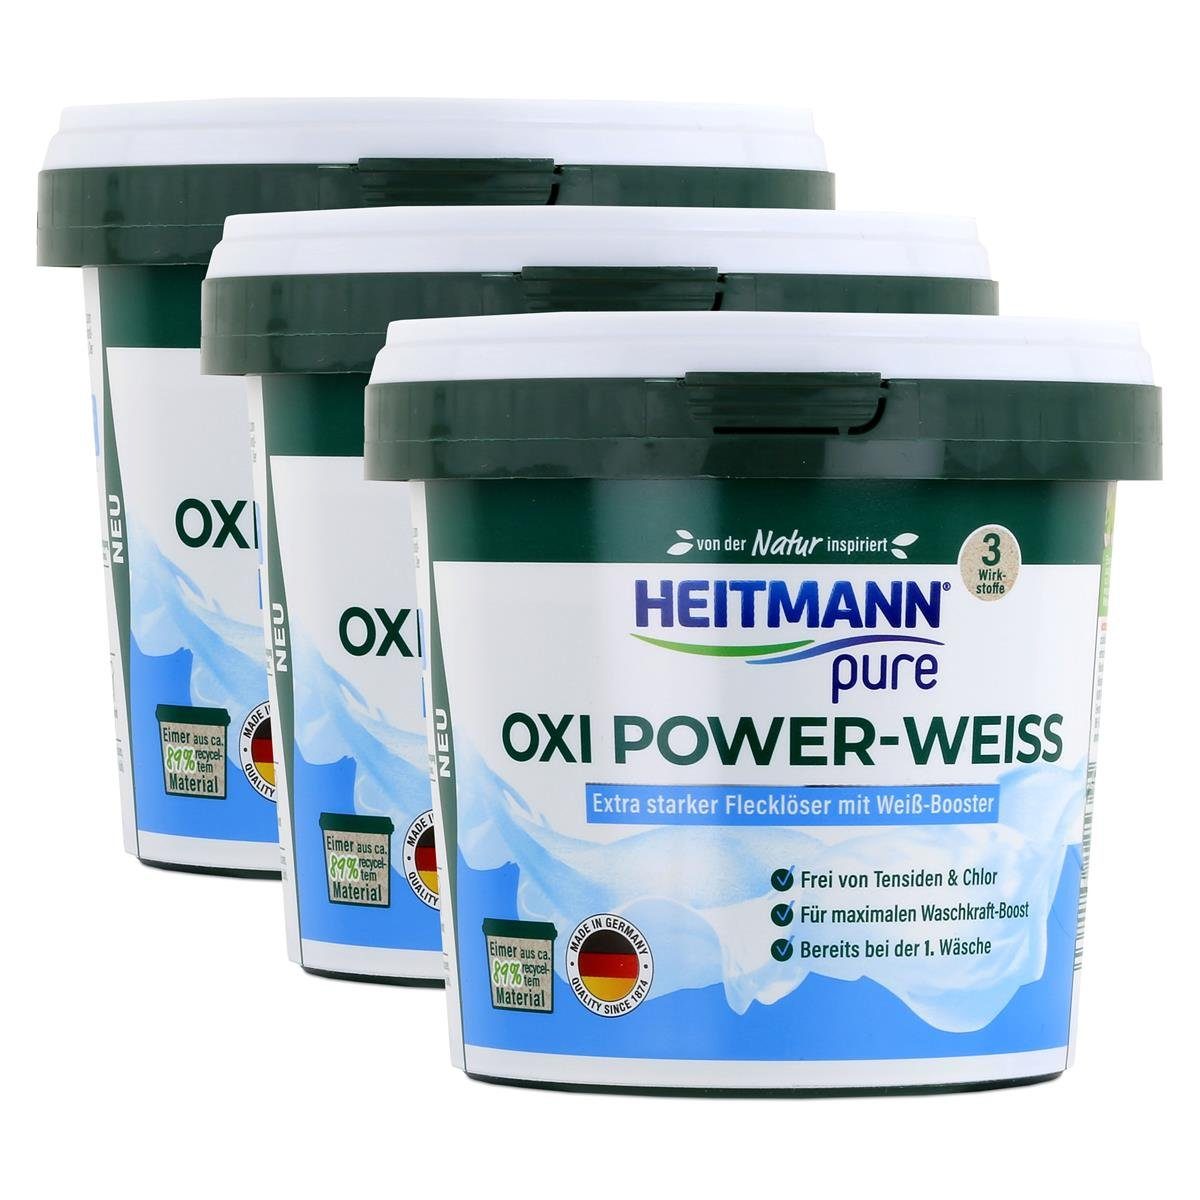 HEITMANN Heitmann pure Oxi Power-Weiss 500g - Flecklöser mit Weiß-Booster (3er Vollwaschmittel